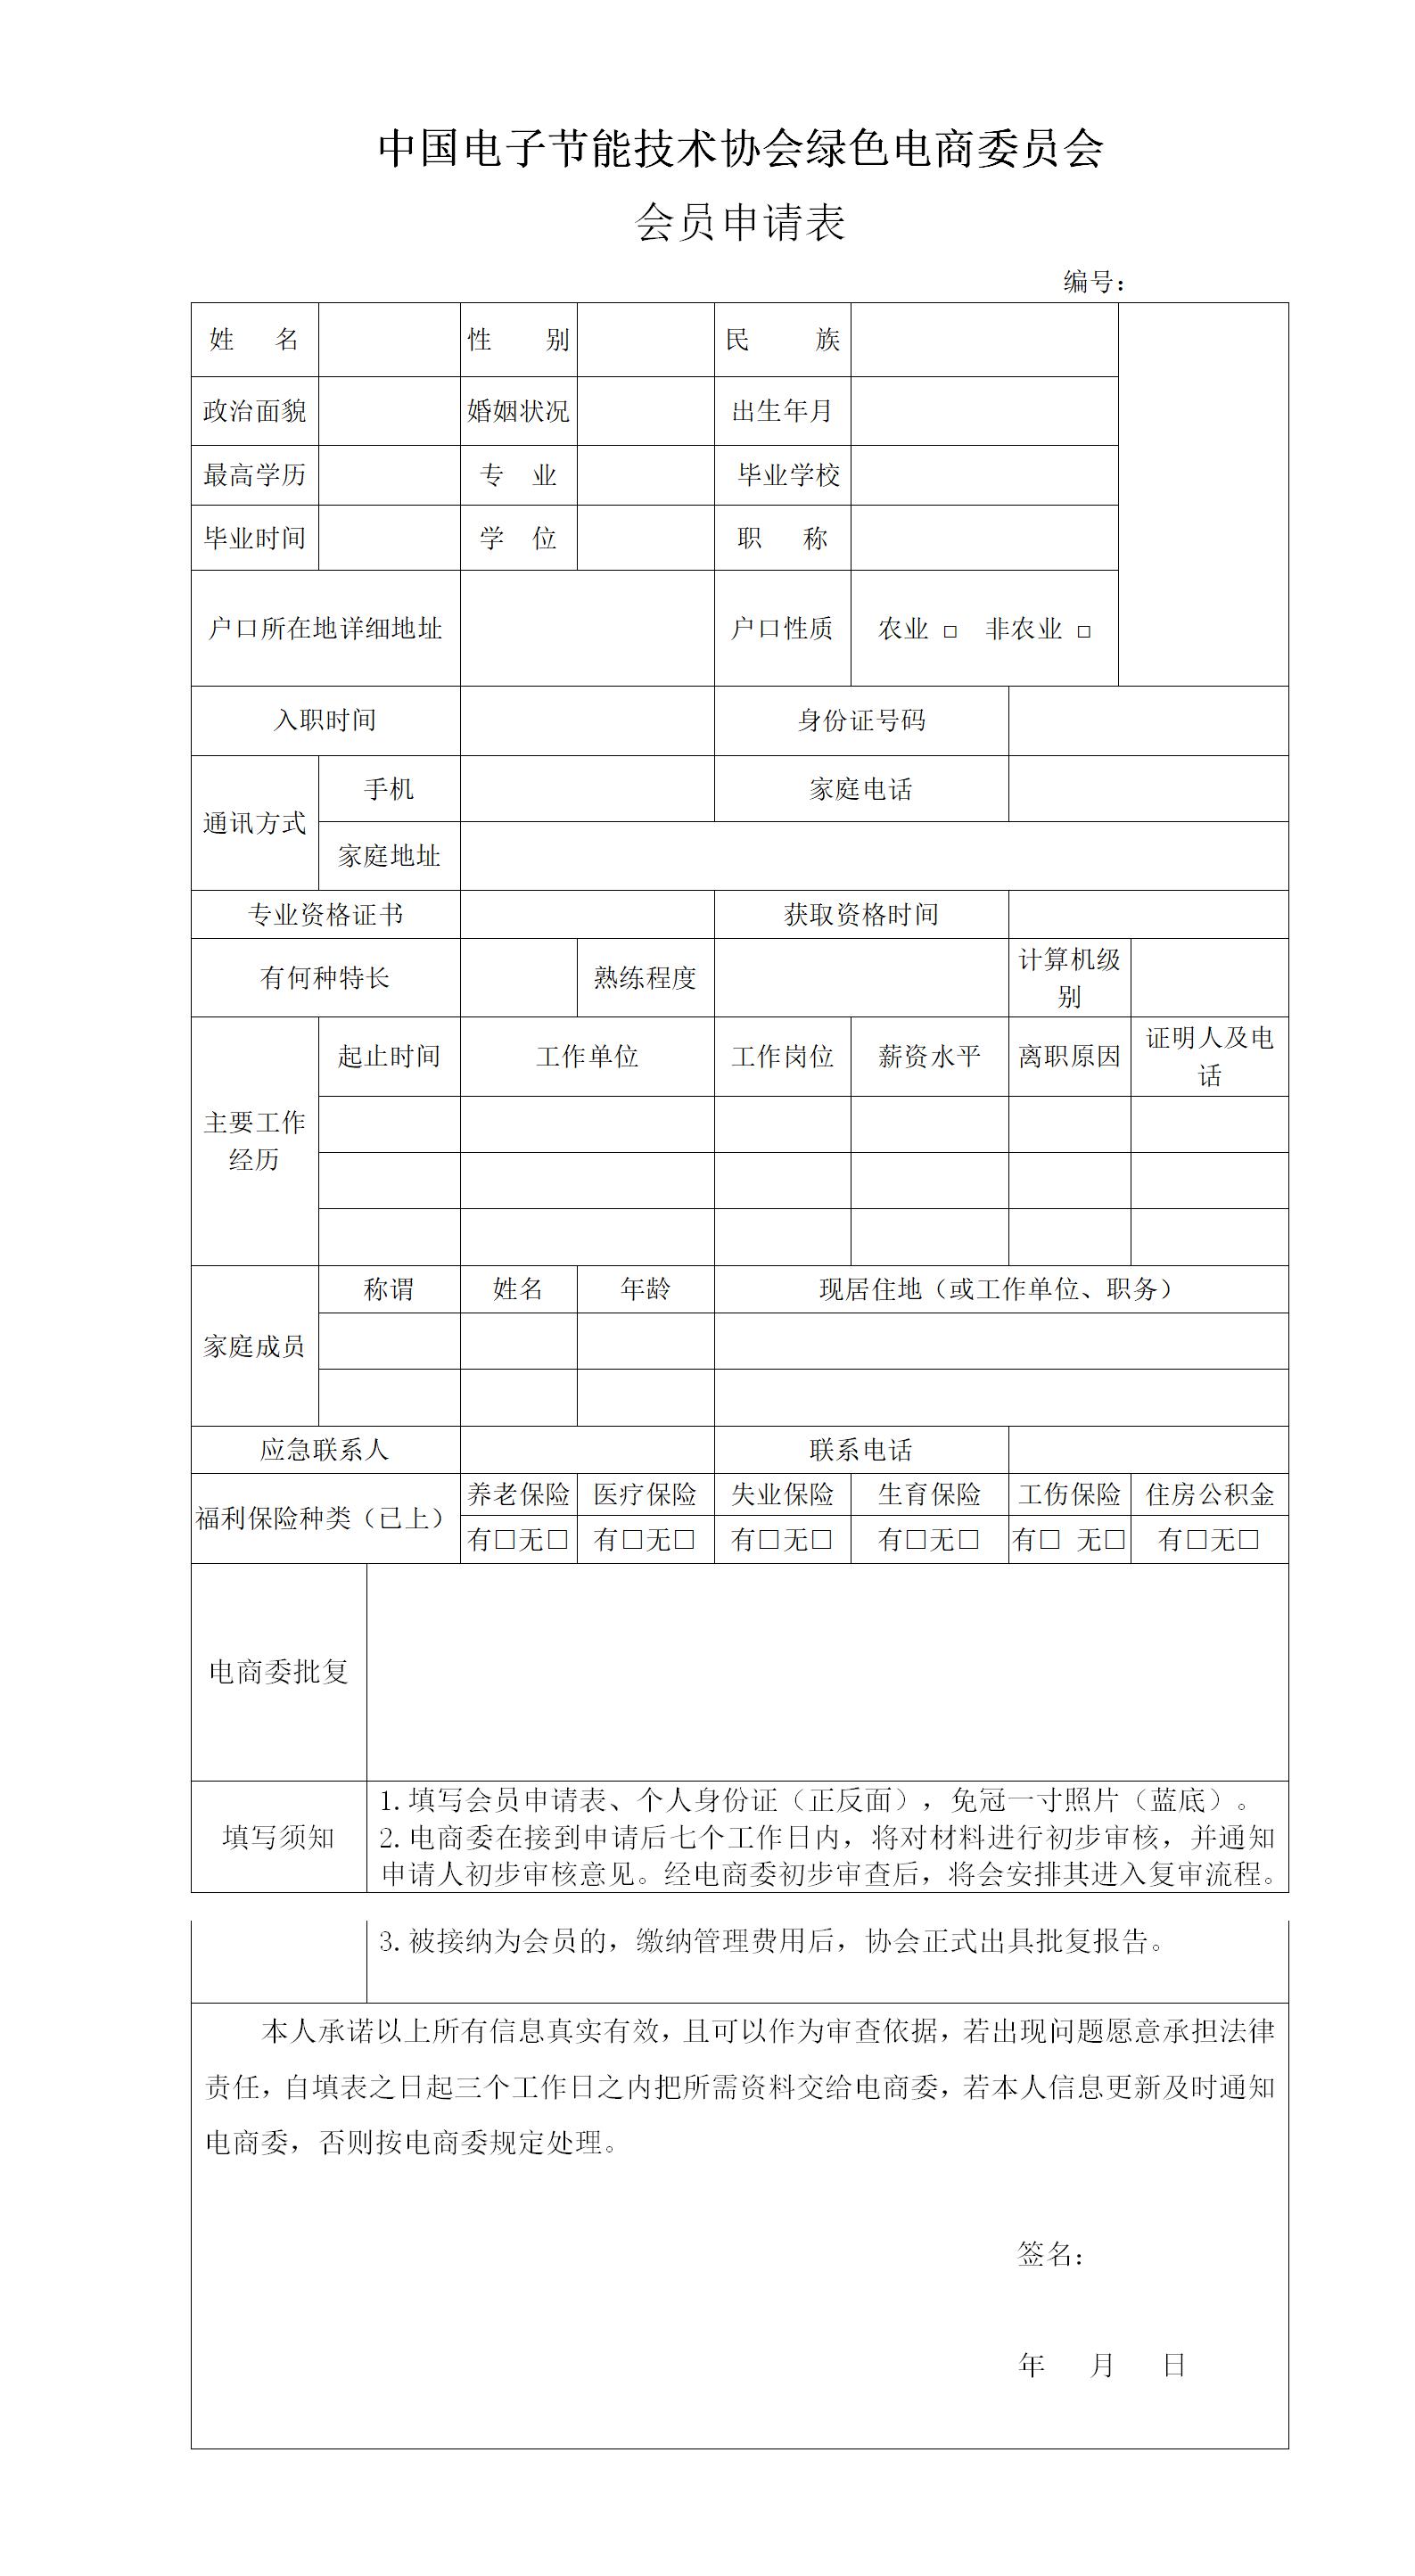 中国绿色电商委员会会员入会申请表.jpg